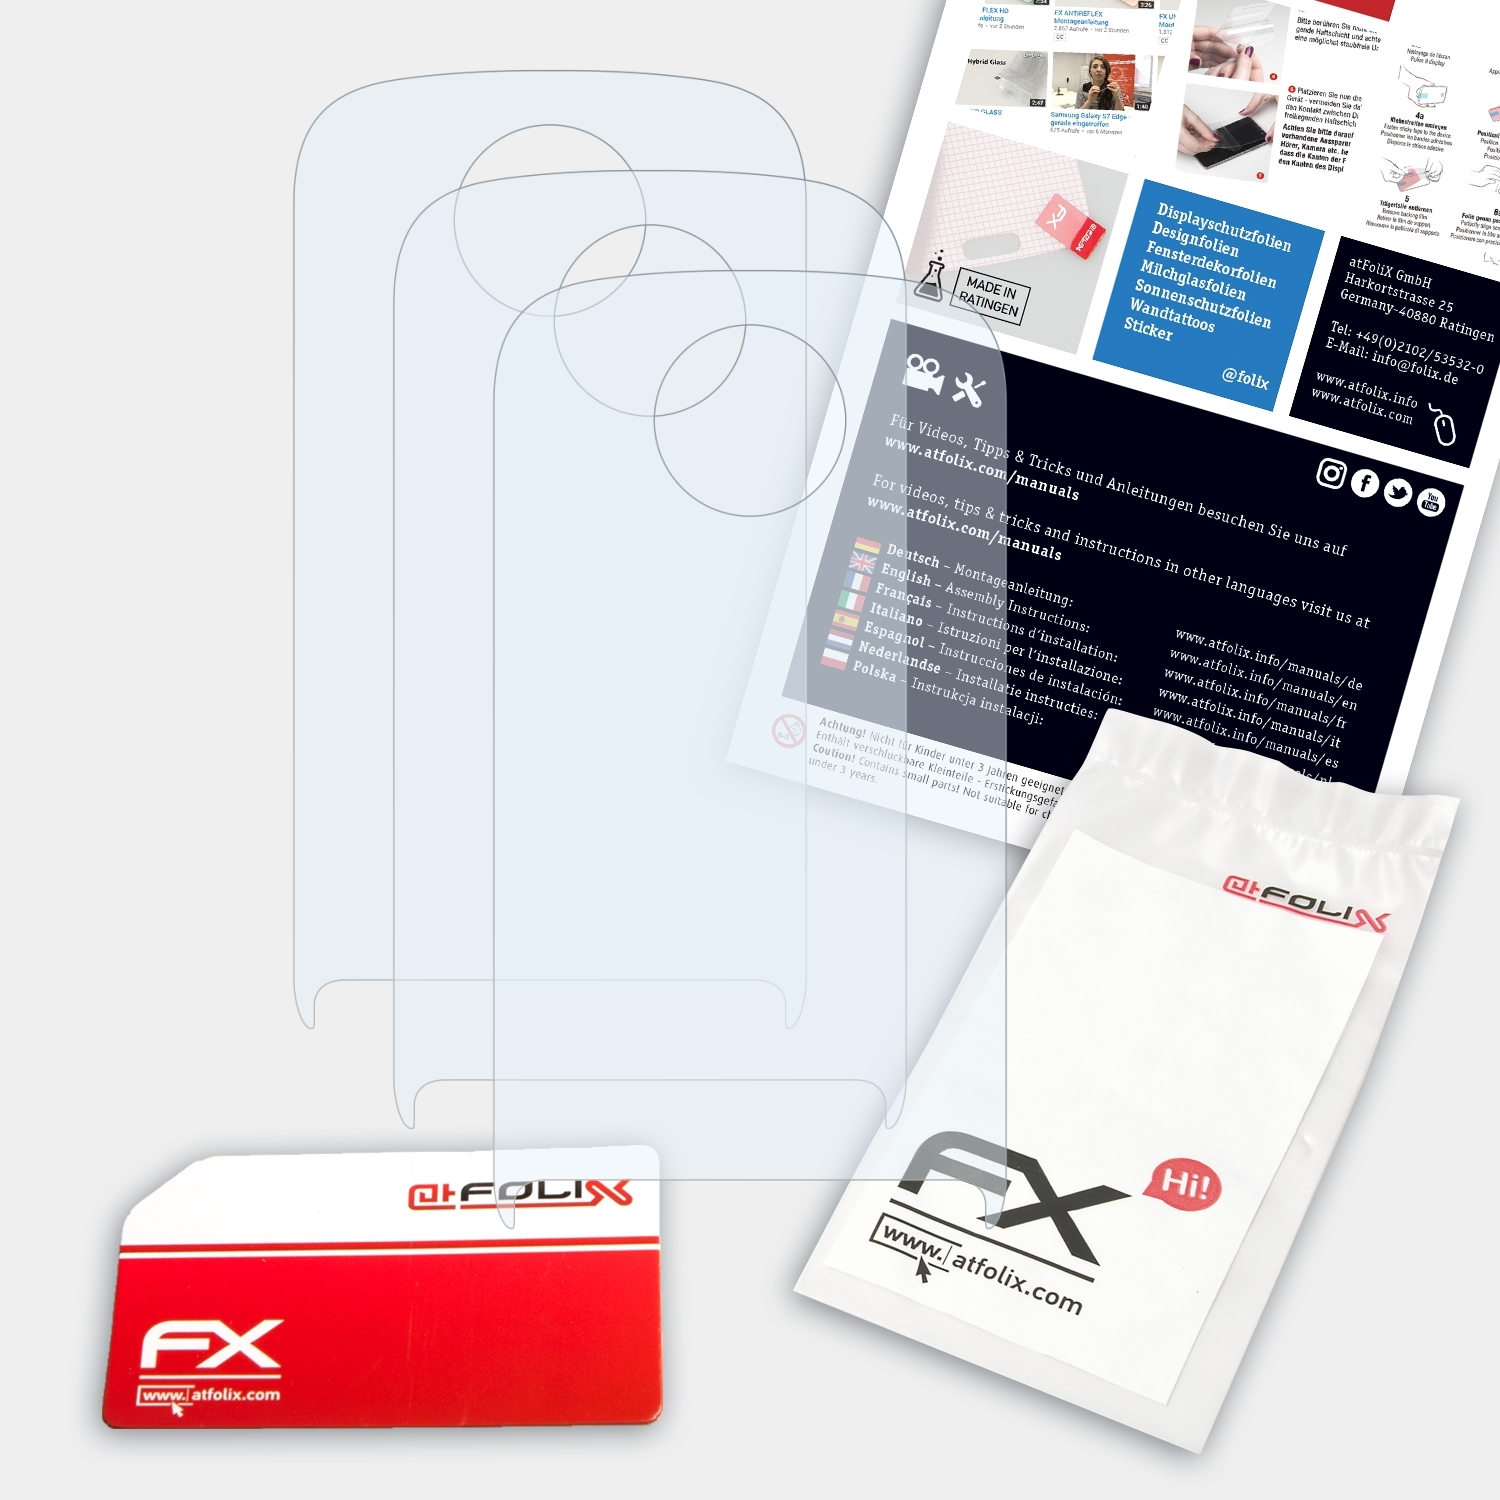 ATFOLIX 3x FX-Clear Displayschutz(für Gigaset S810)